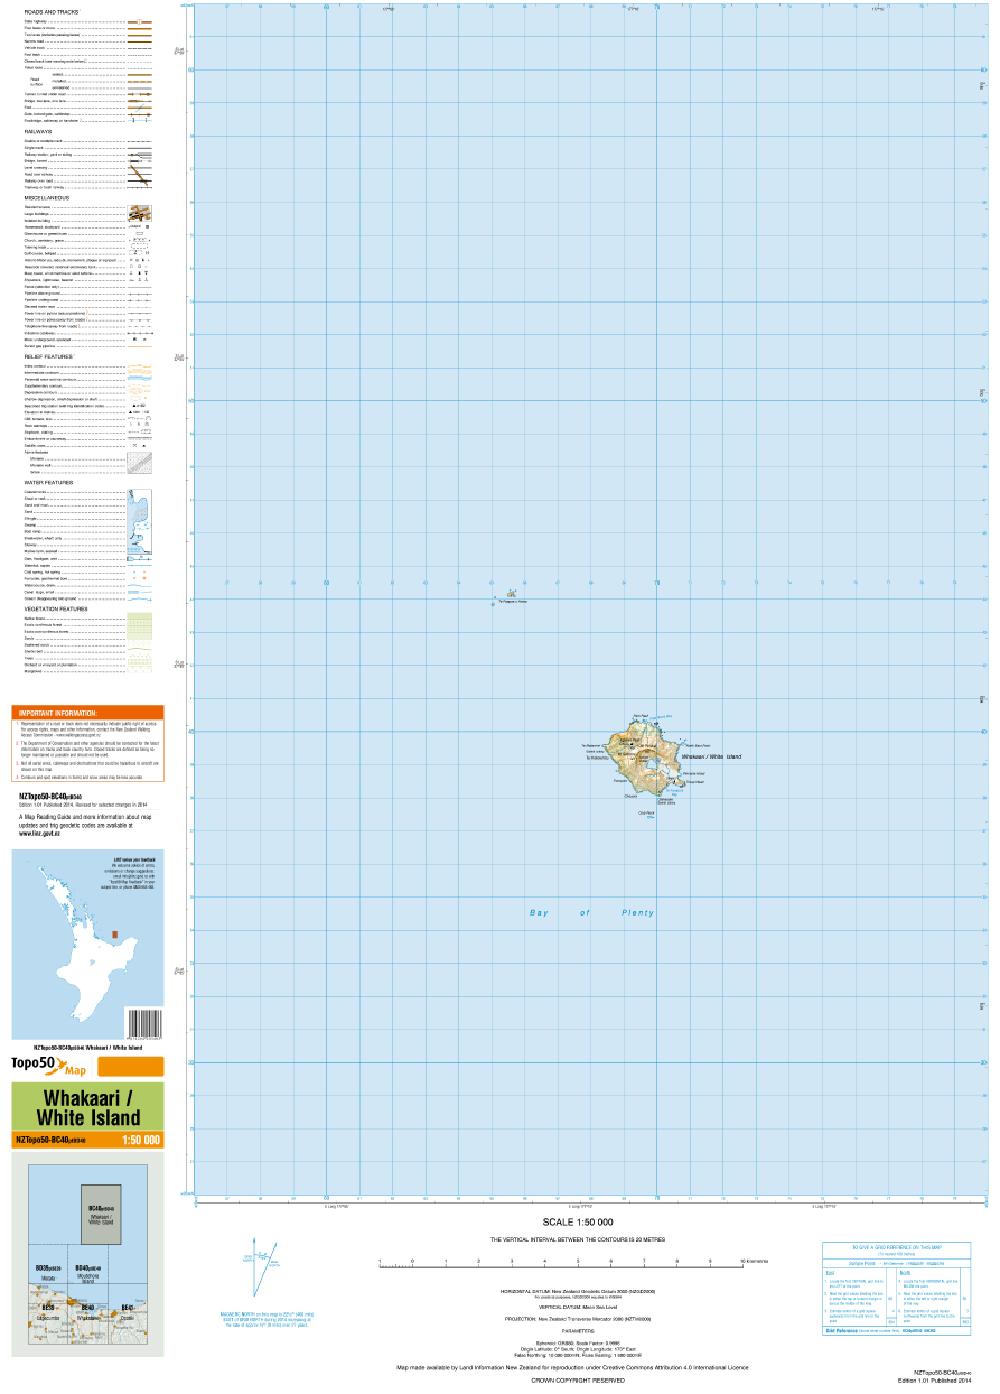 Topo map of Whakaari / White Island